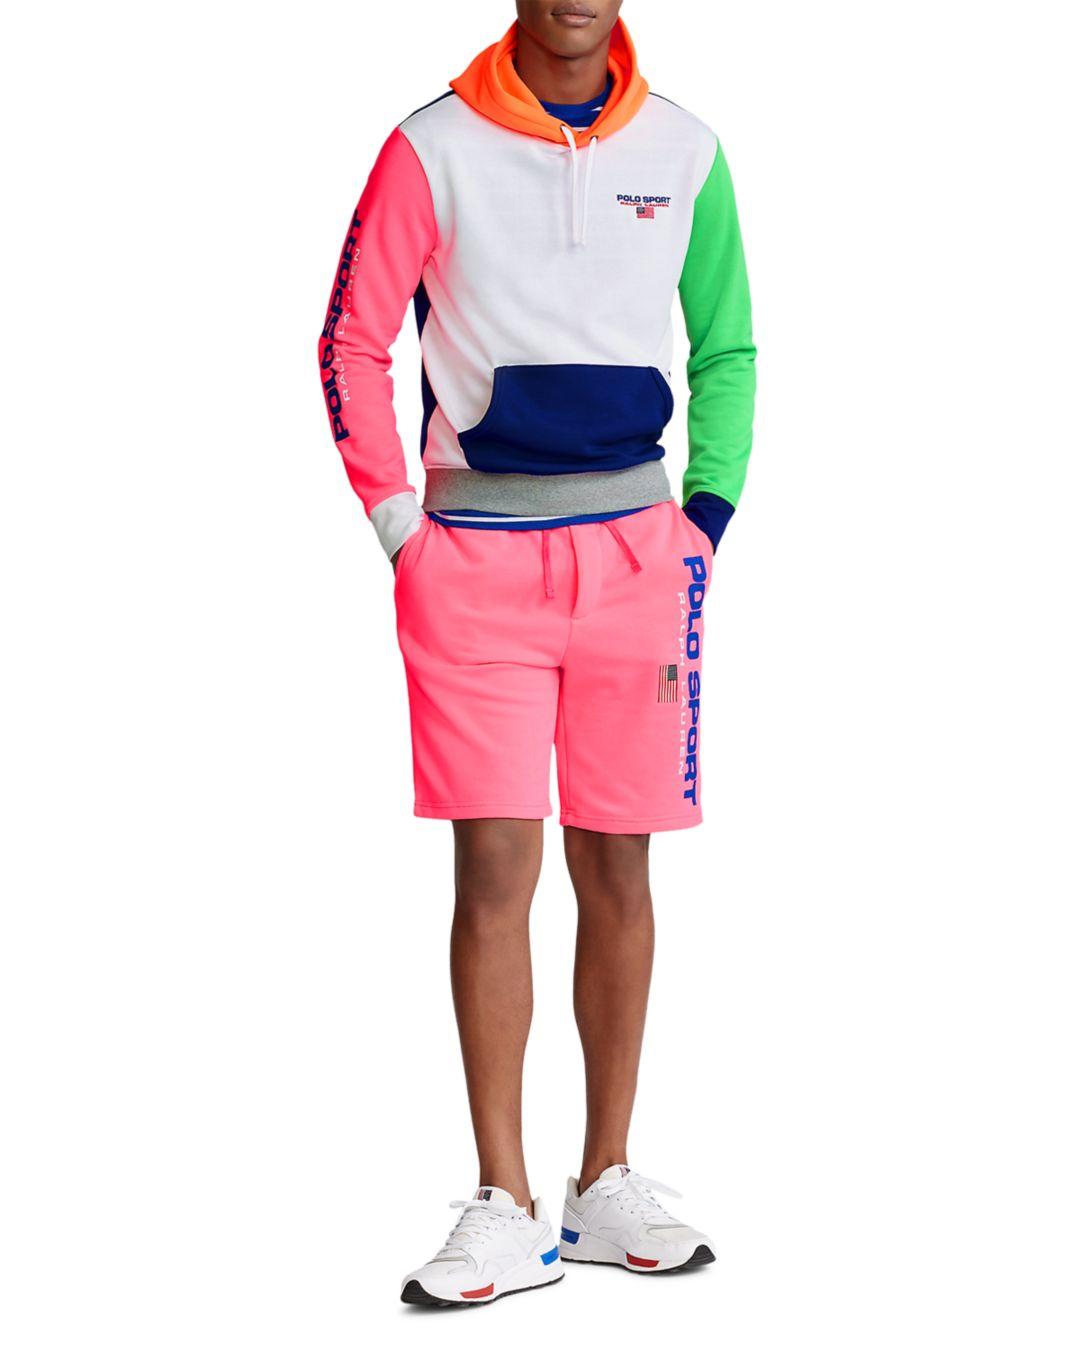 Polo Ralph Lauren Polo Sport Color Block Fleece Hoodie for Men | Lyst